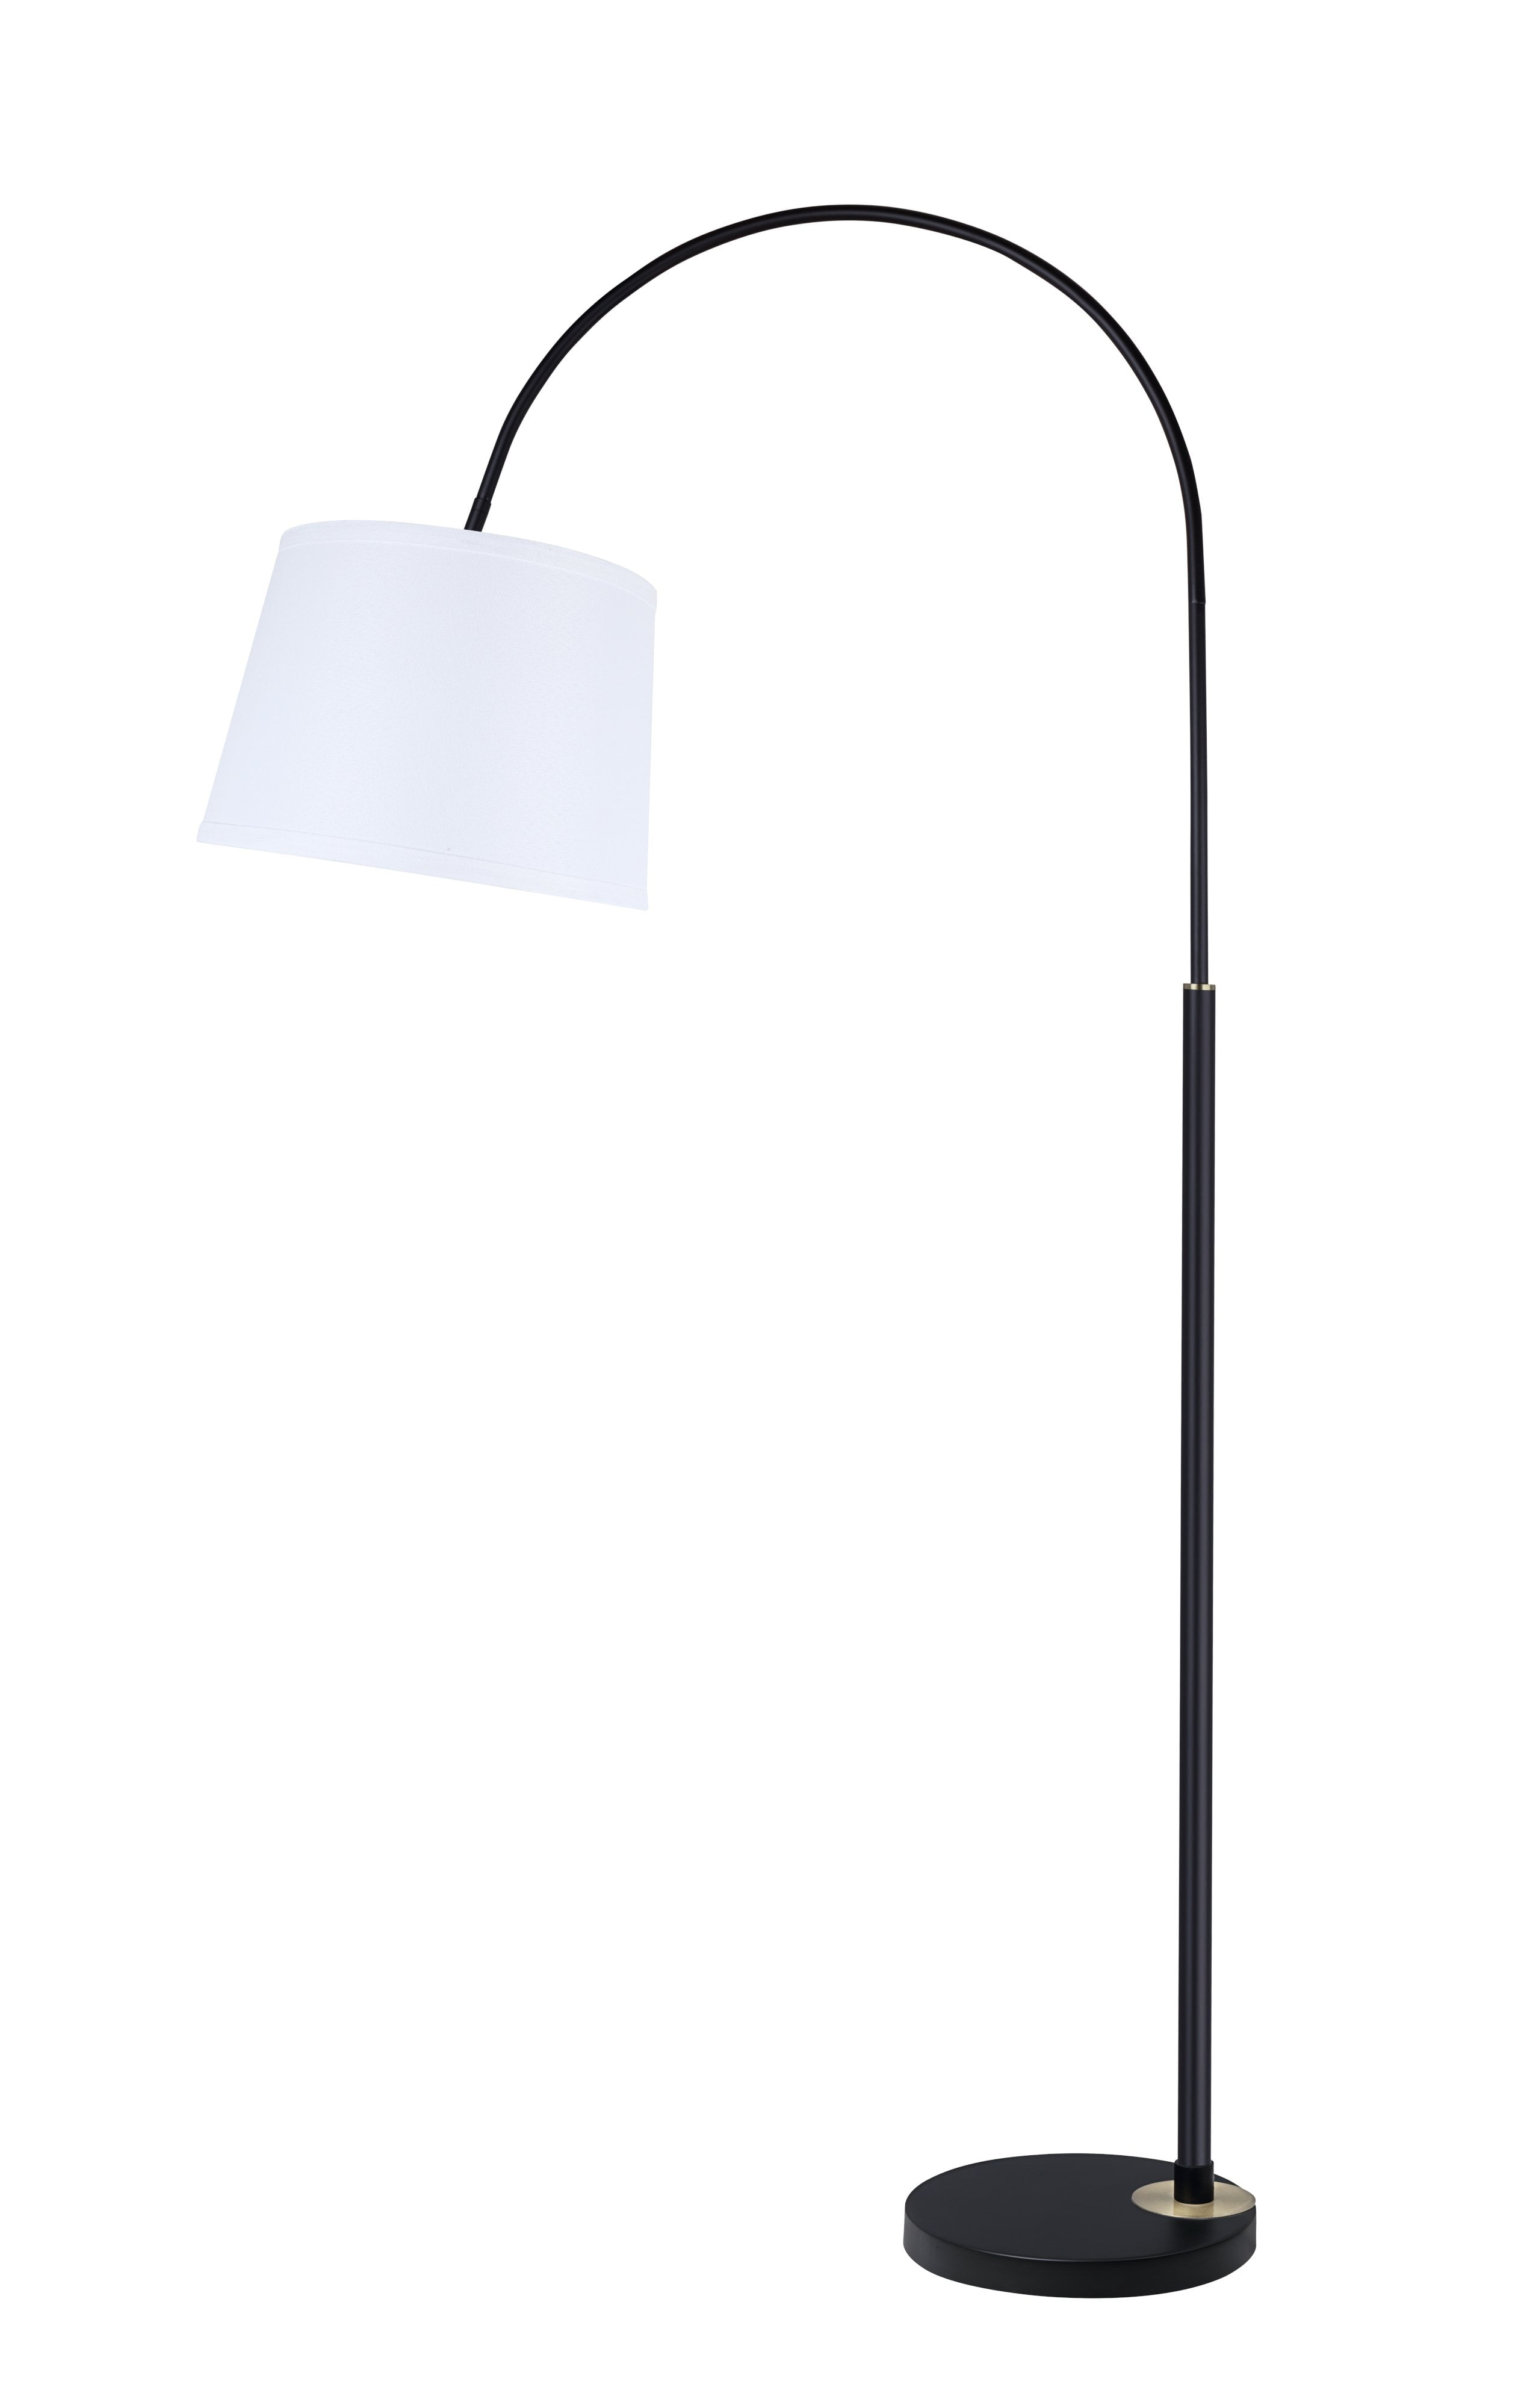 Aspen Creative 45702 11 One Light Arc, 2 Arm Arc Floor Lamp